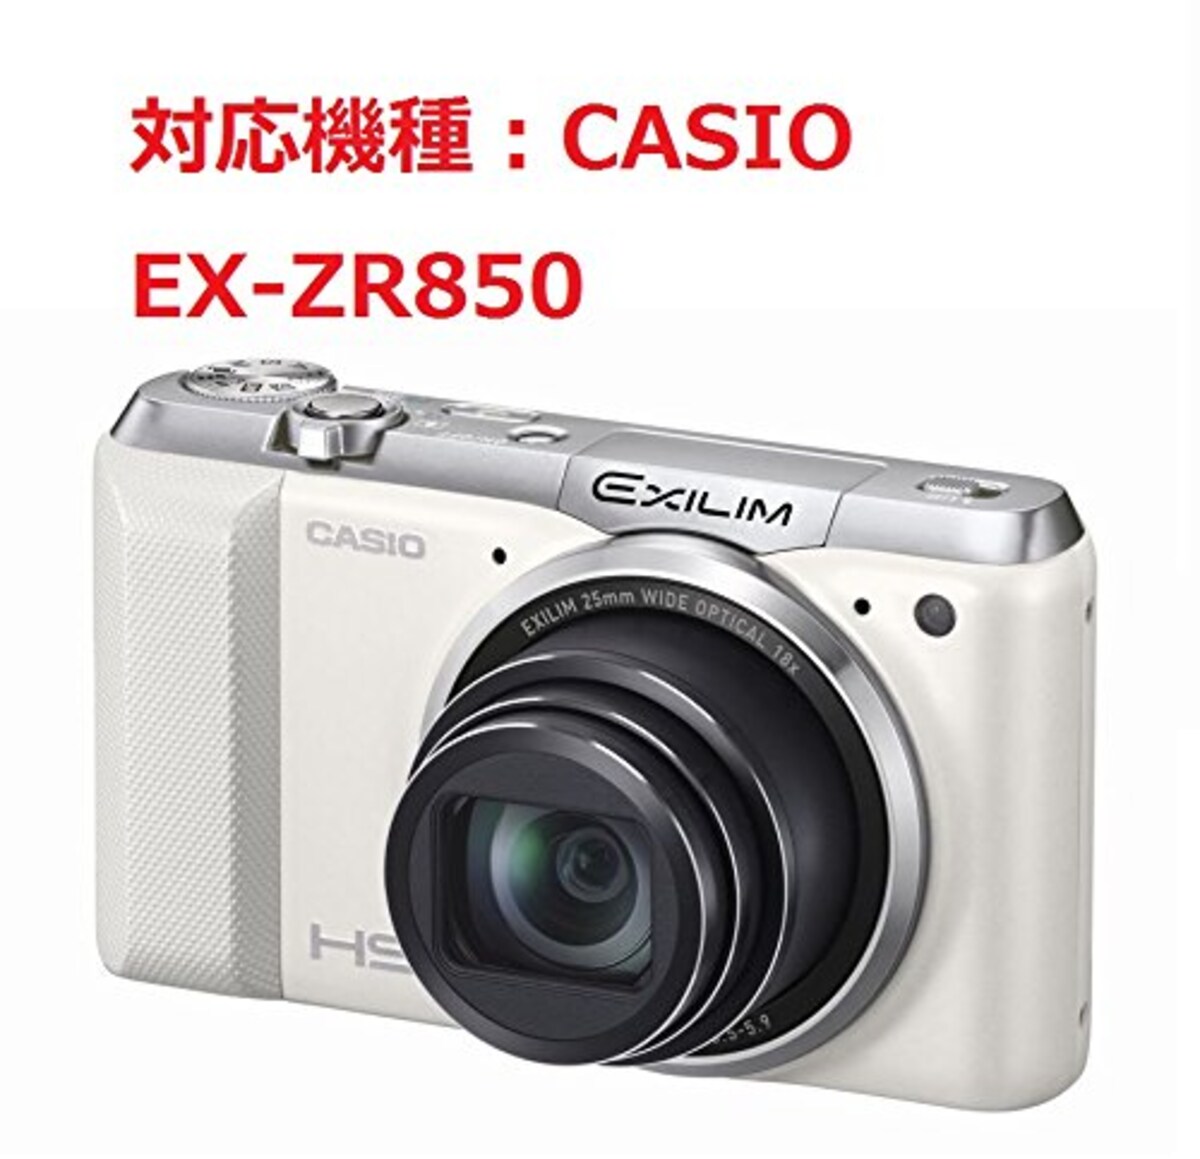  和湘堂 CASIO EX-ZR850 デジタルカメラ用 合成革ケース 2色「519-0002A」 (ダークブラウン)画像9 